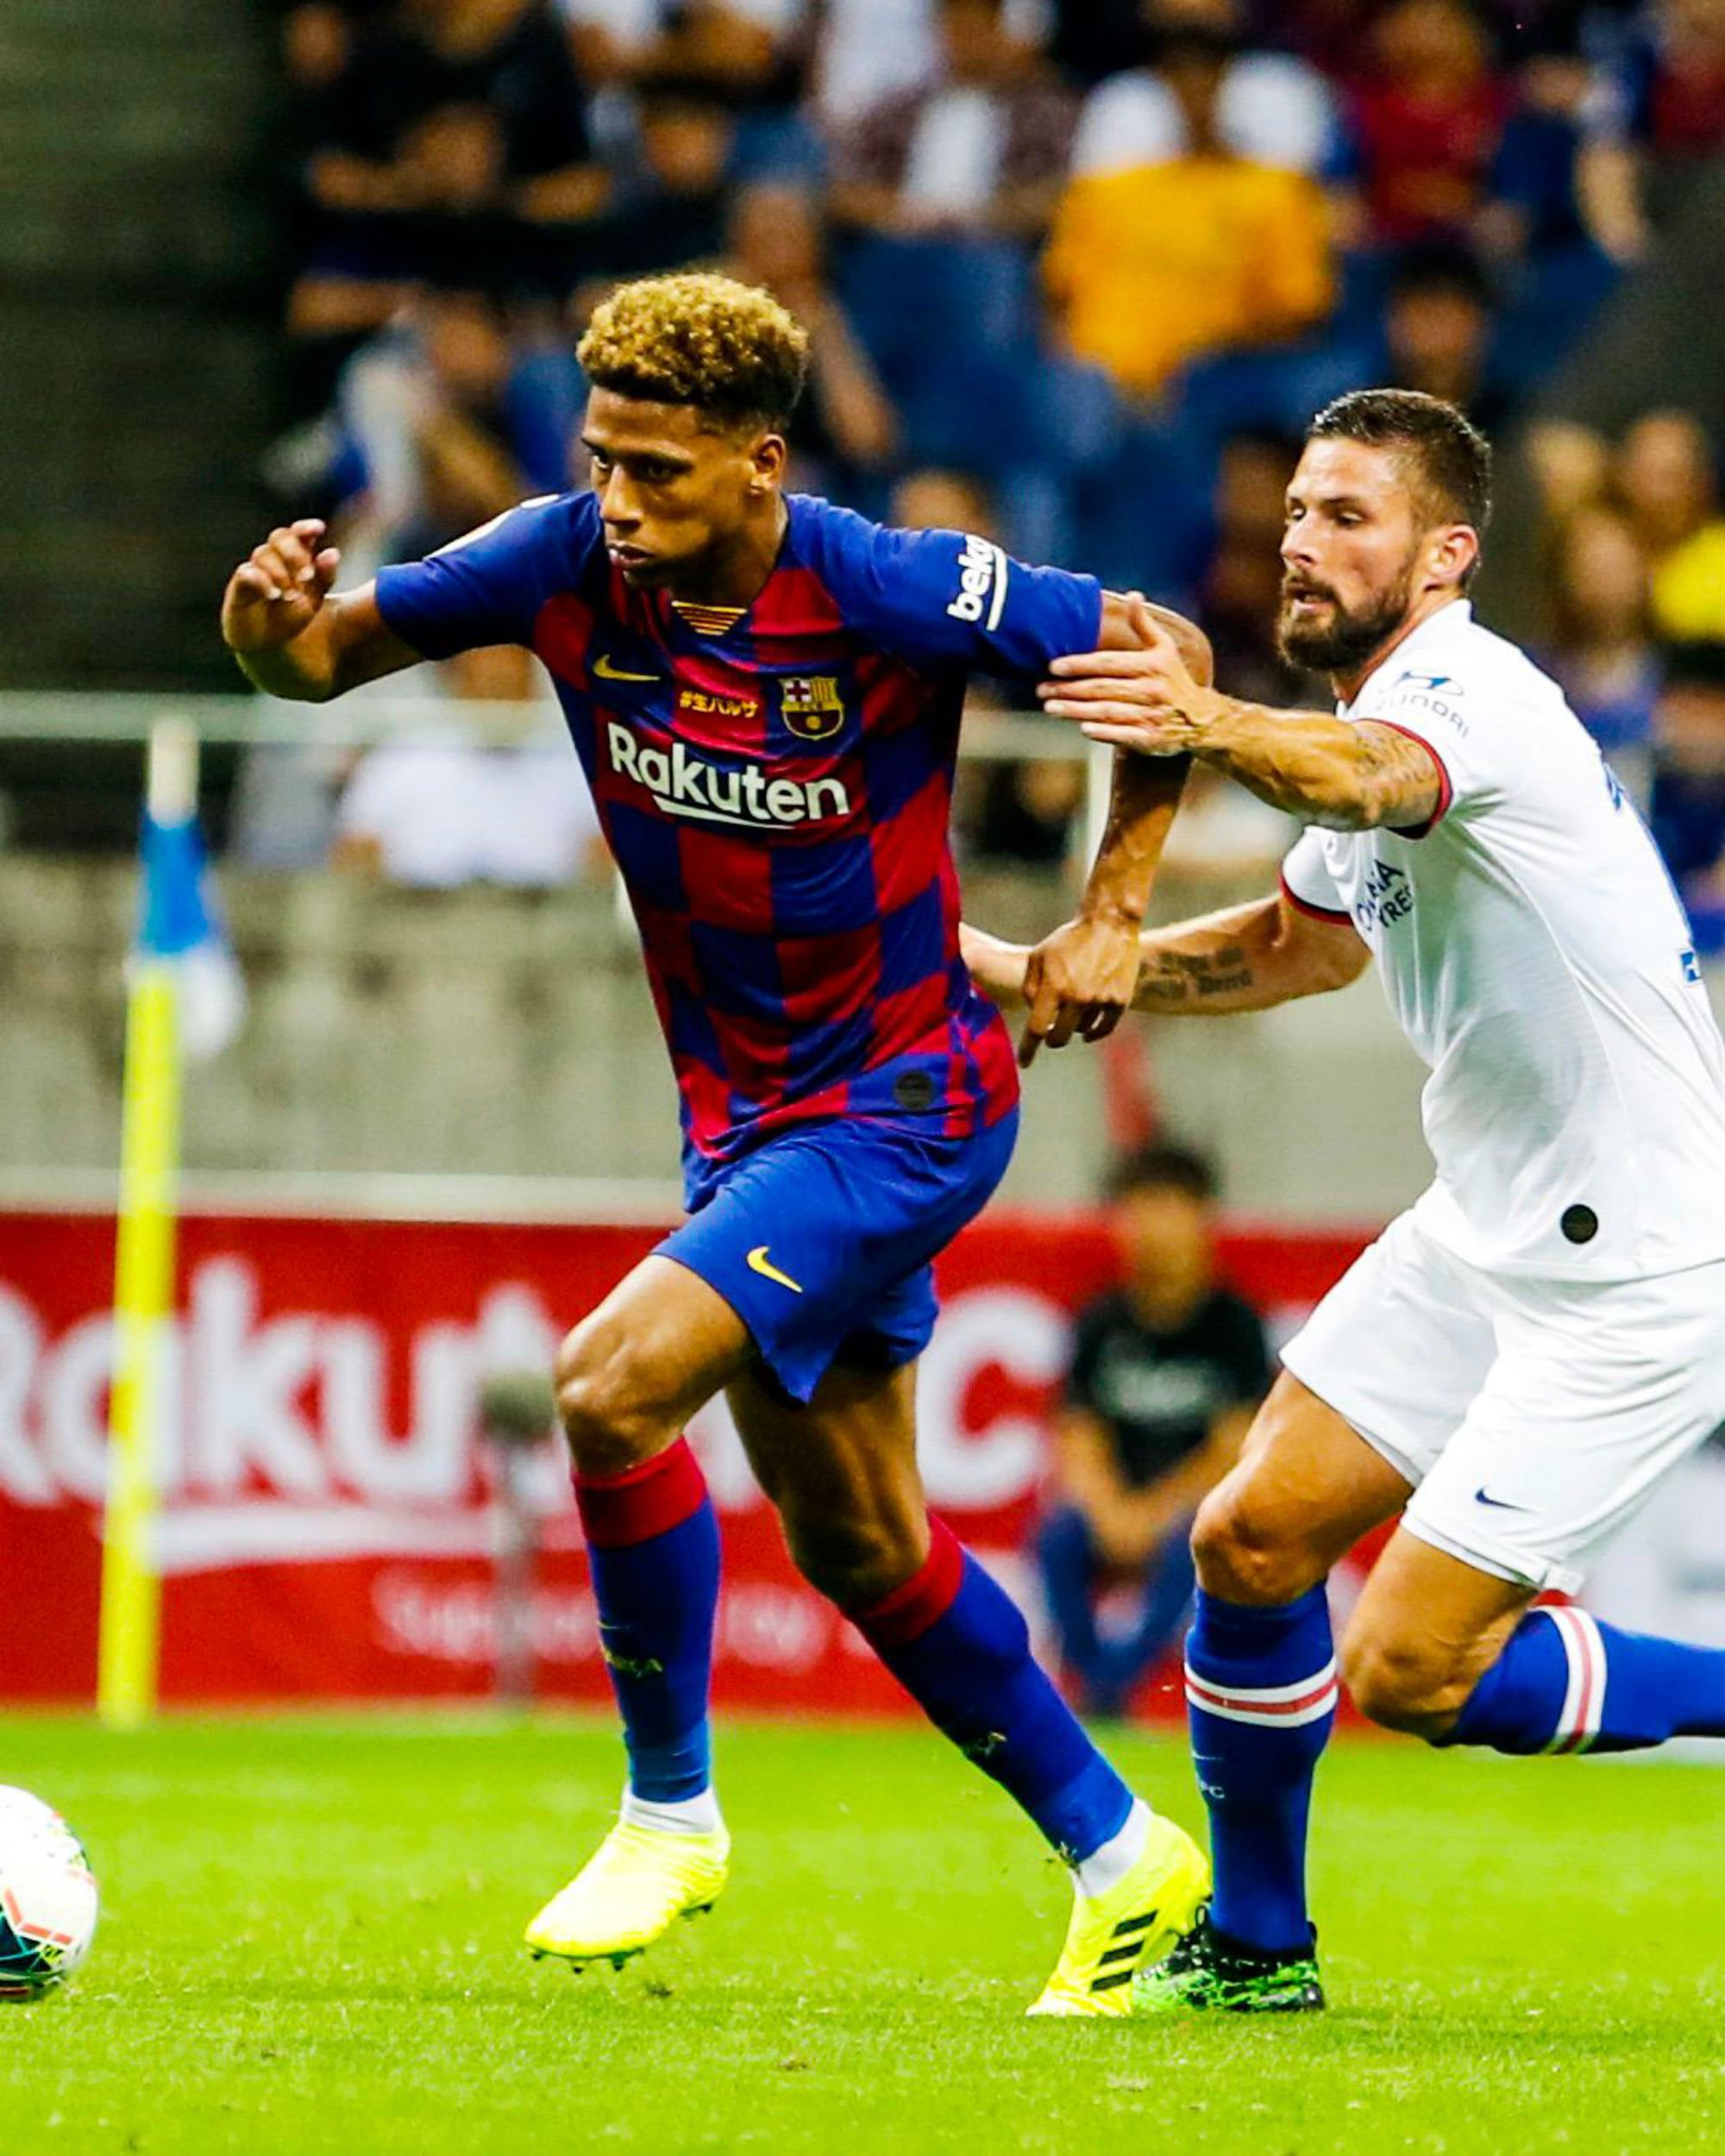 El Barça intenta col·locar Todibo al PSG per abaratir Neymar, però ell s'hi nega